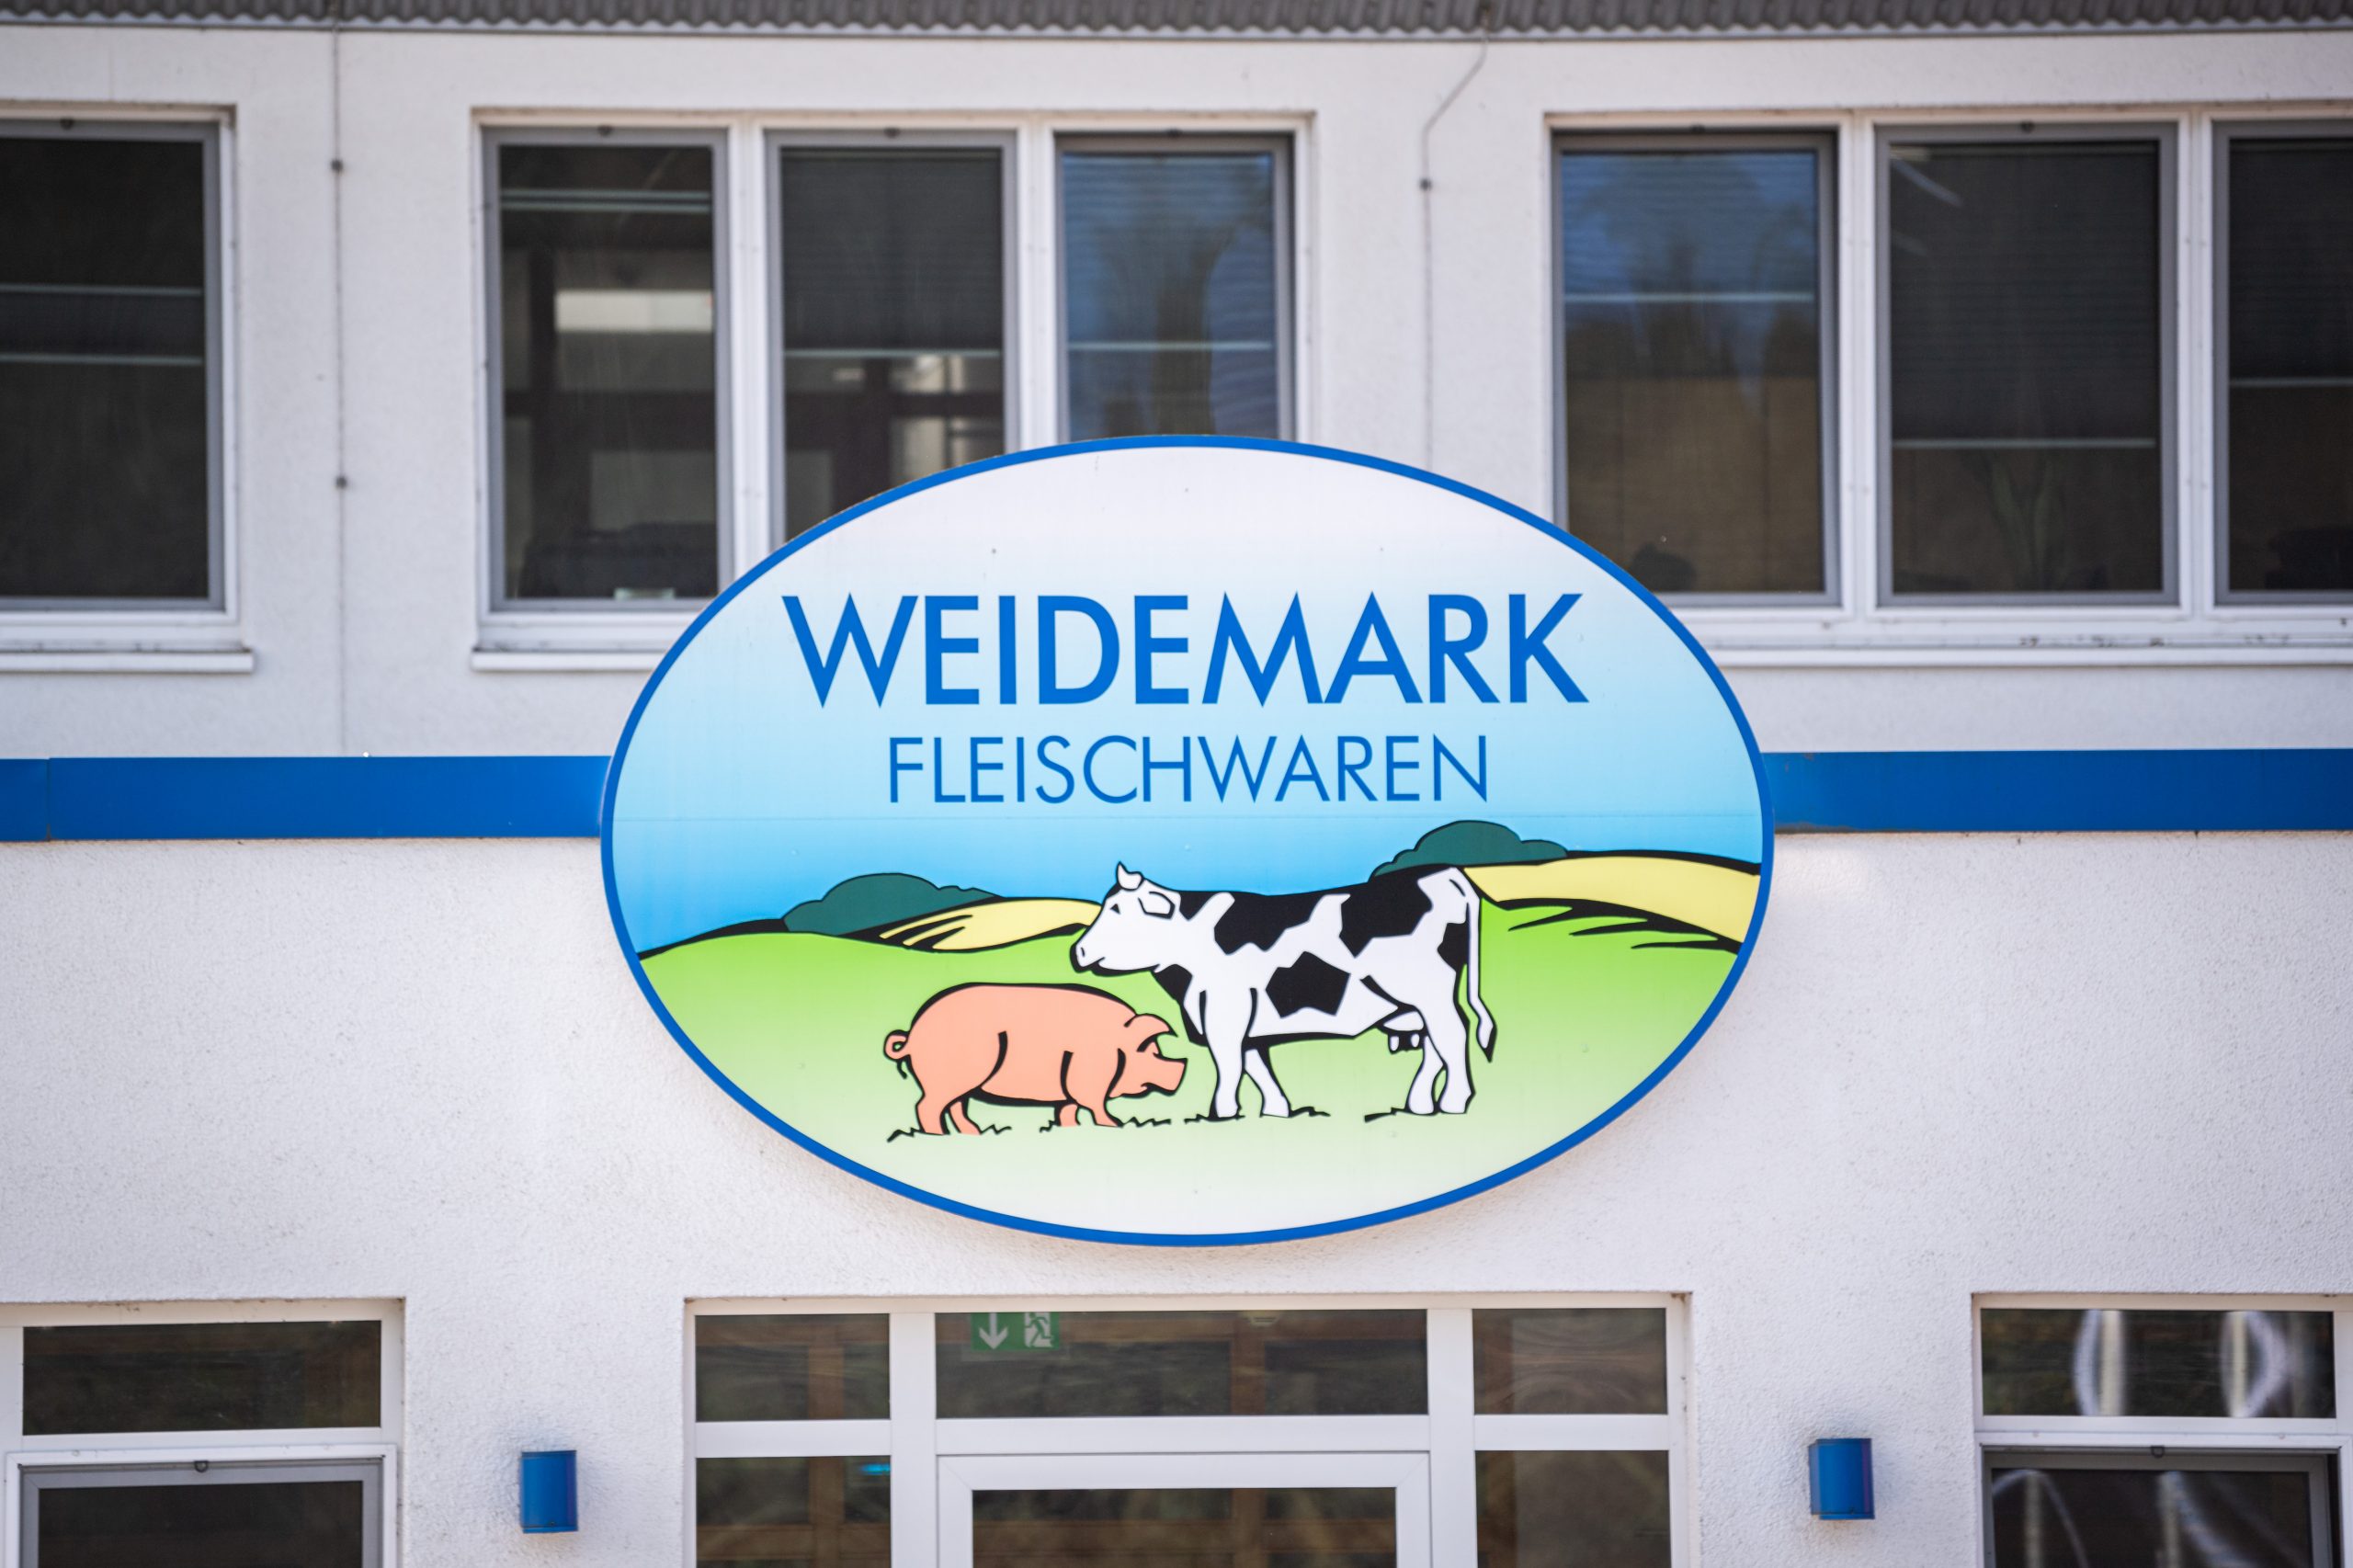 Der Name „Weidemark Fleischwaren“ steht auf einem Schild am Firmengelände von Weidemark.